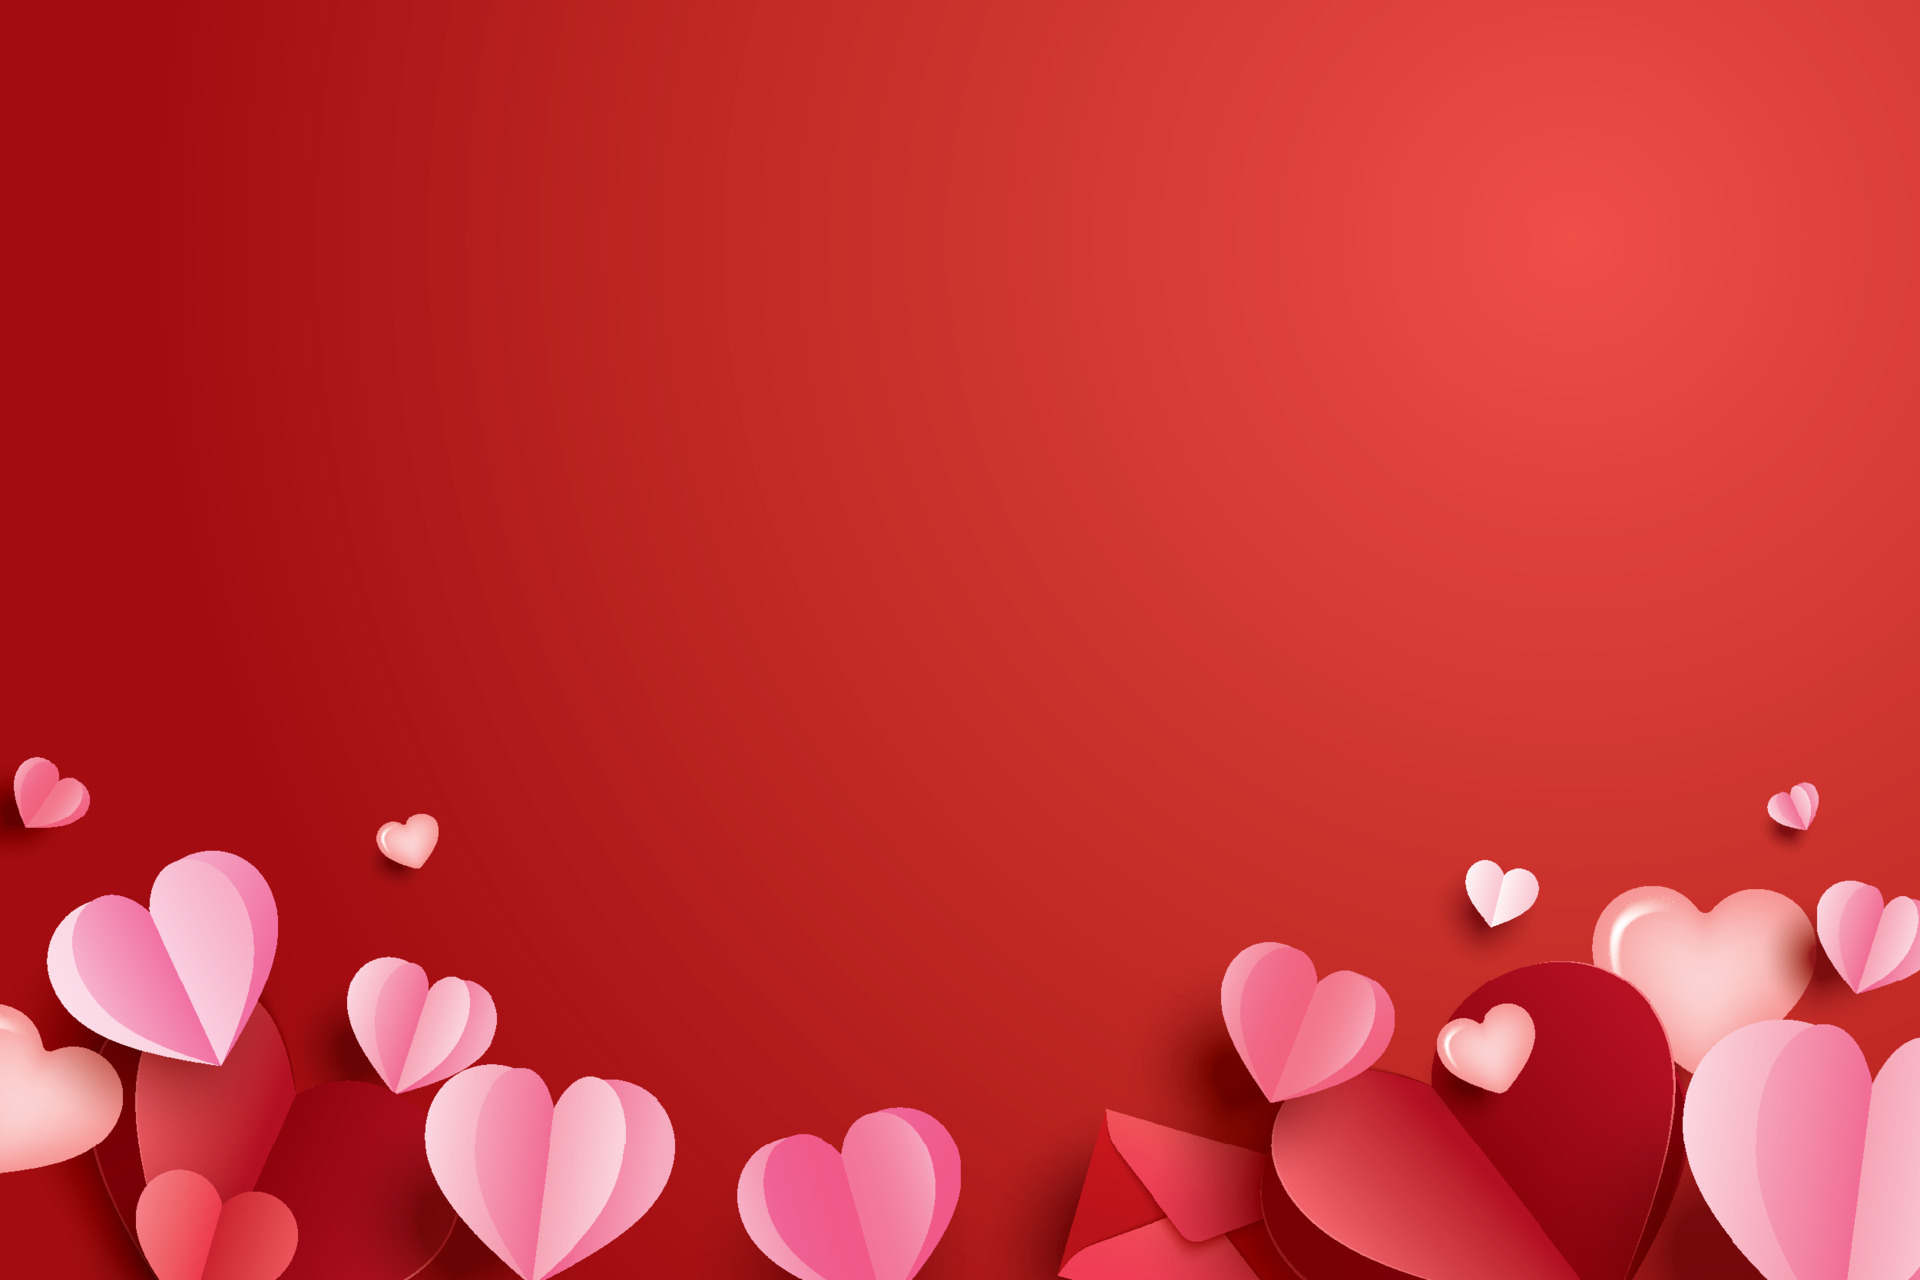 Bạn đang muốn tìm kiếm một hình nền đẹp và vô cùng đặc biệt cho ngày Valentine? Hãy tải ngay hình nền trái tim giấy trên nền đỏ rực rỡ! Với không gian cực đẹp này, bạn sẽ có thể gửi lời chúc tình yêu đến người ấy một cách ngọt ngào và đầy ý nghĩa.